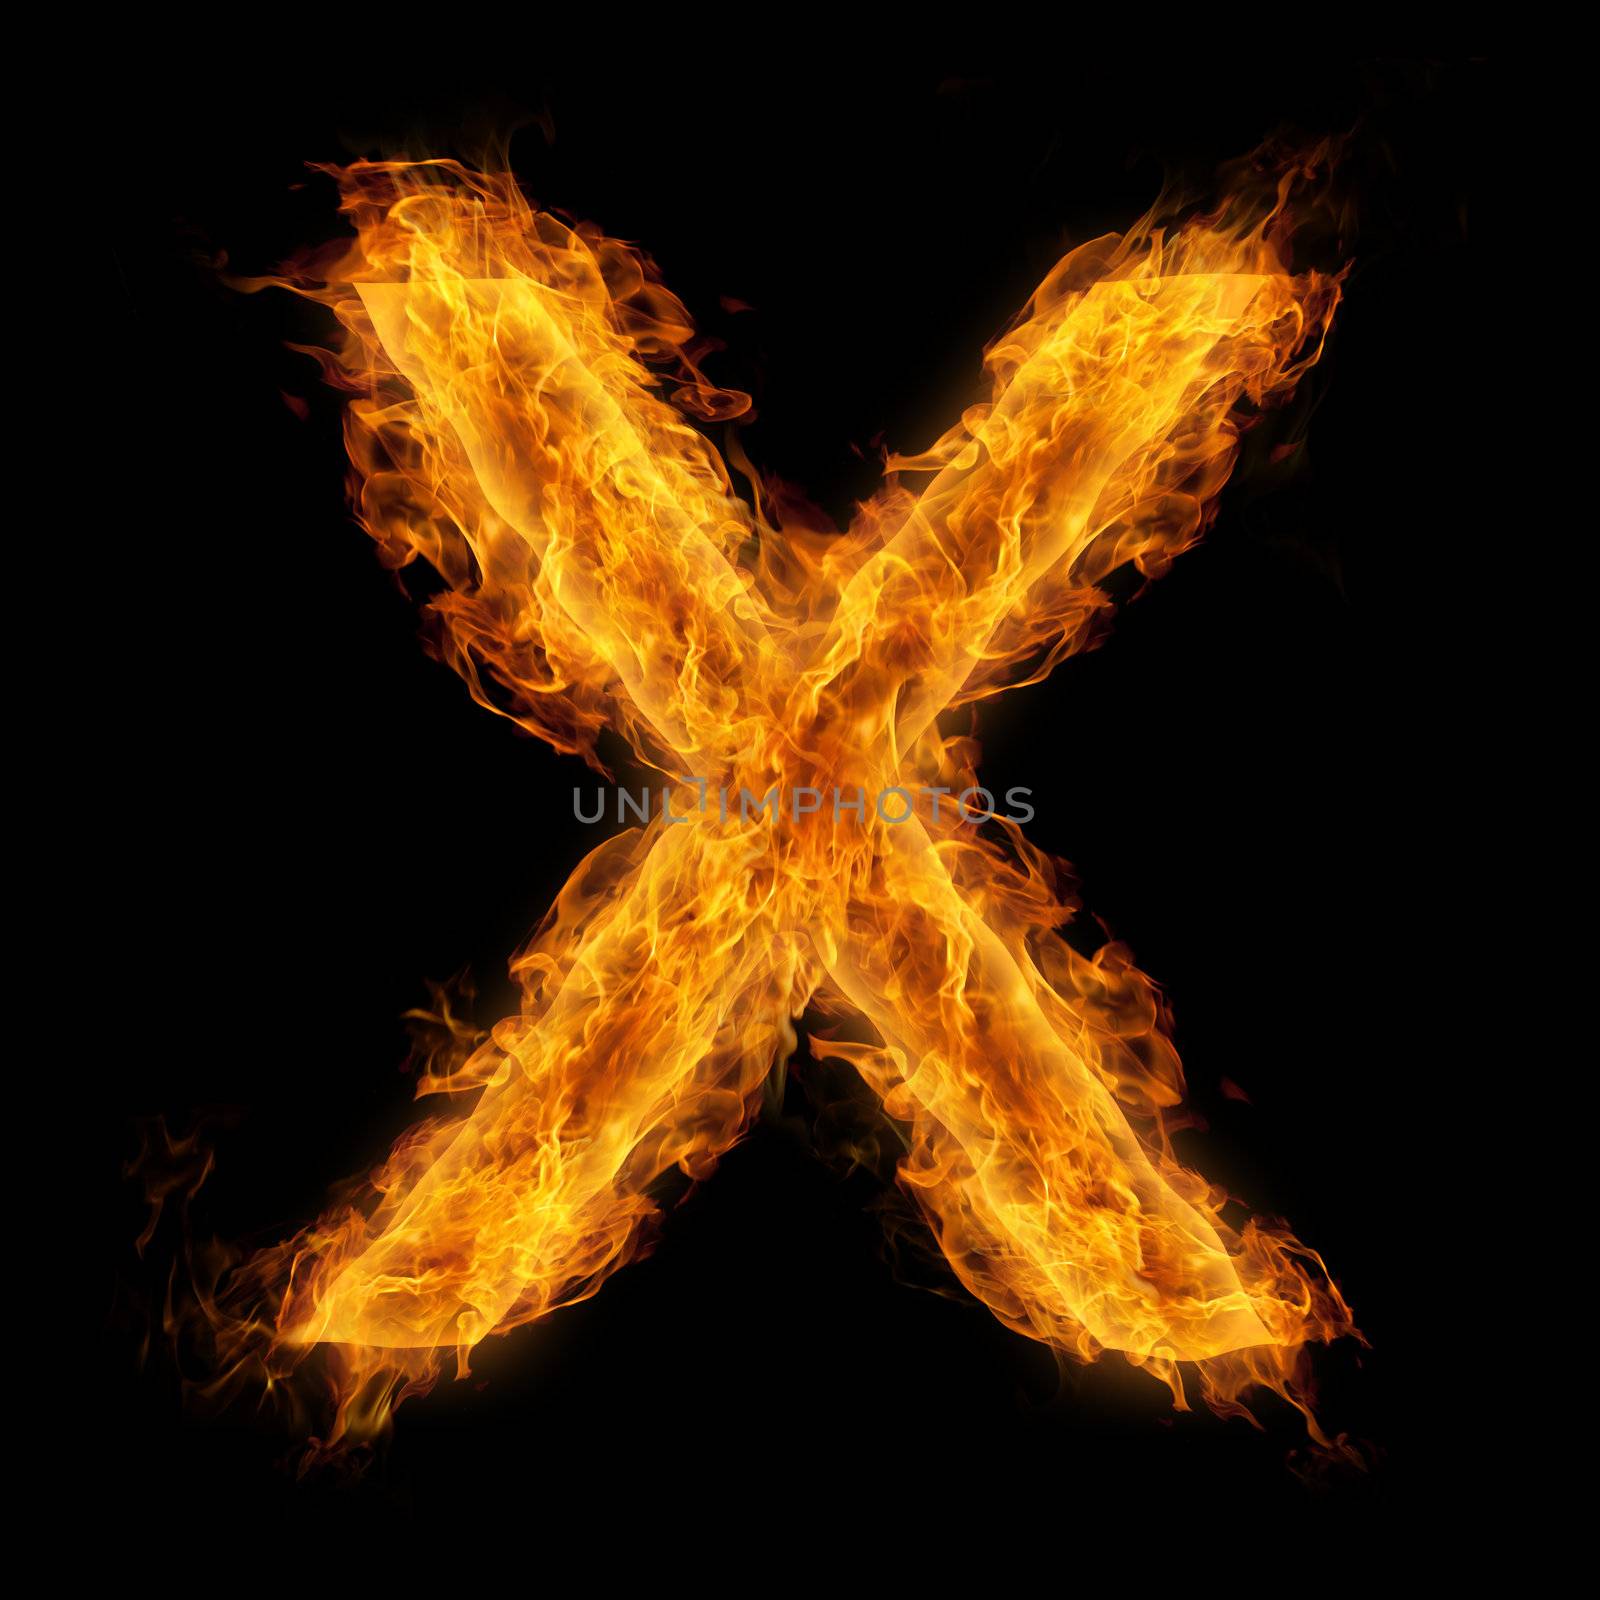 Flaming Letter X by melpomene